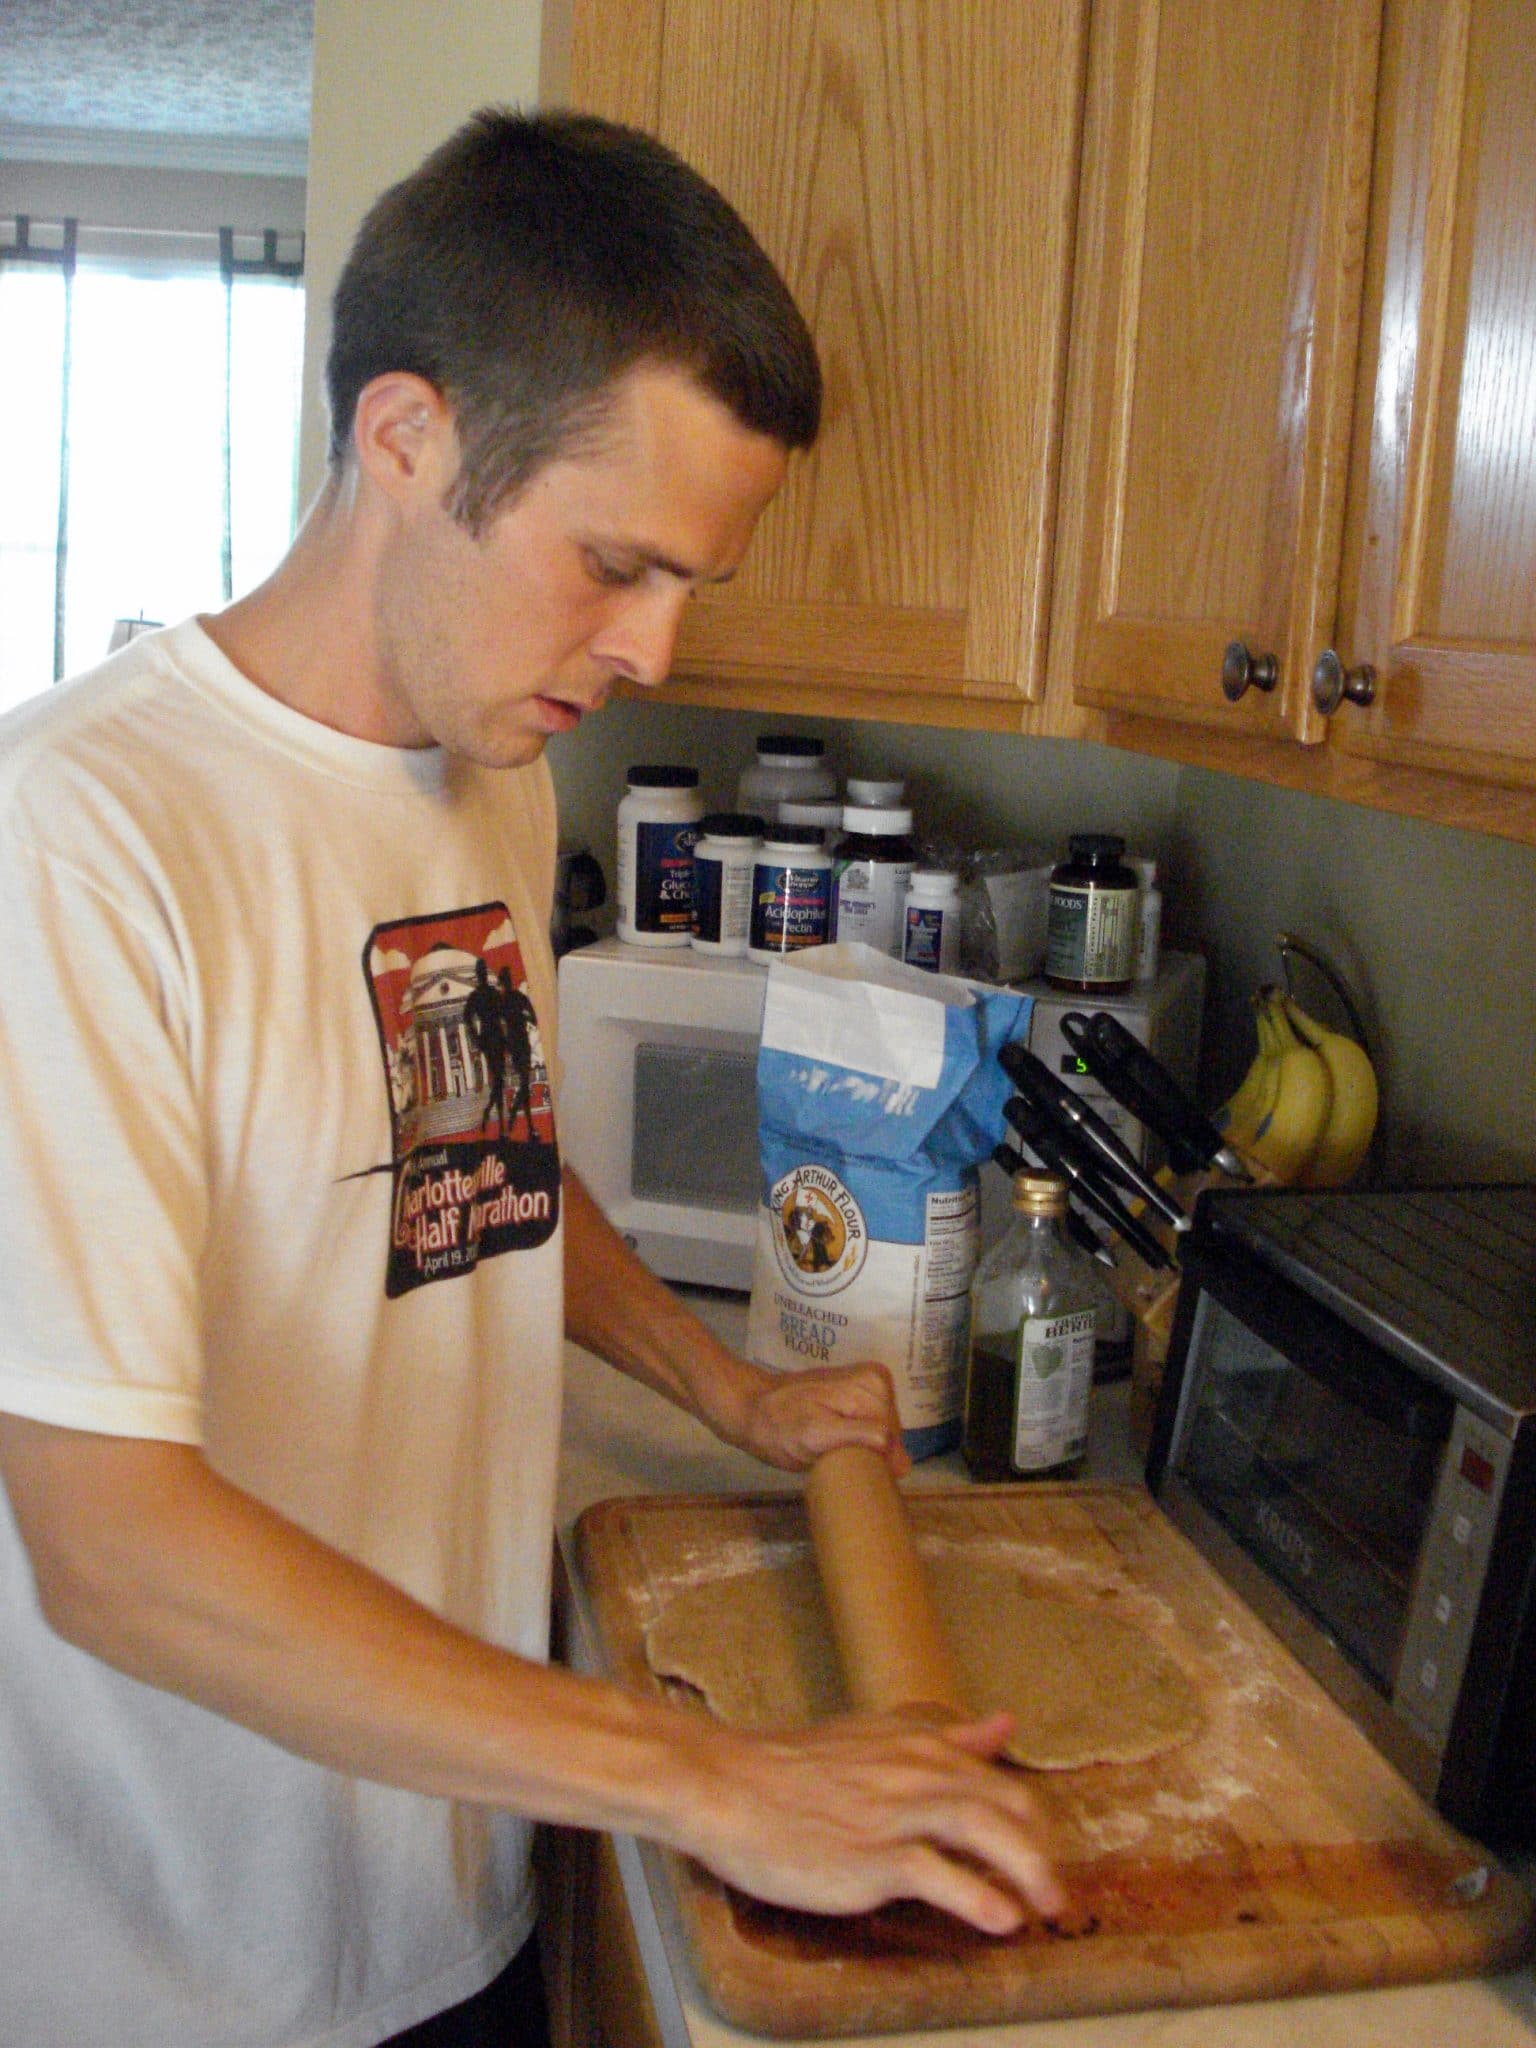 Matt rolling out pizza dough